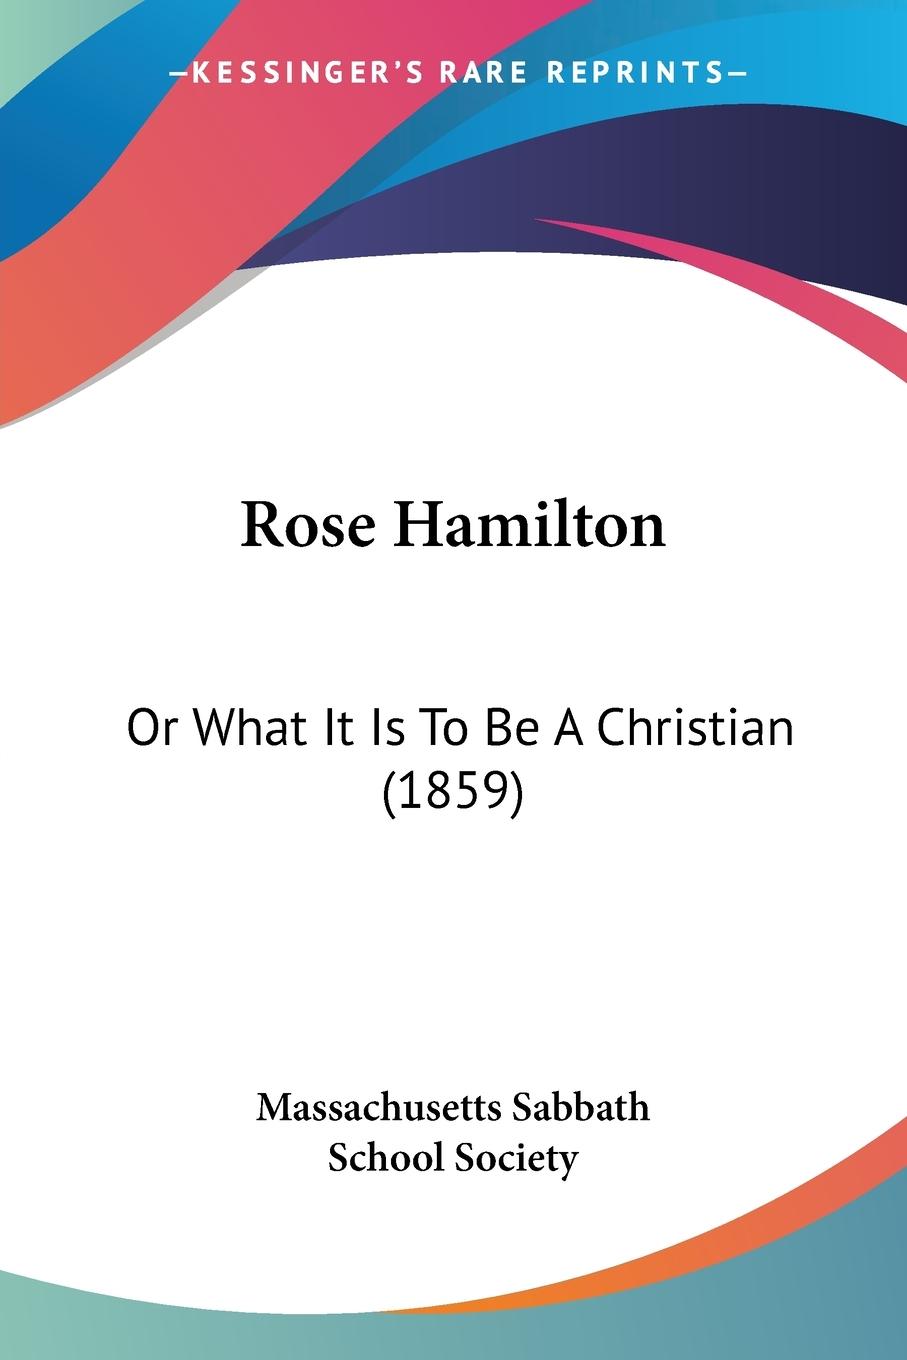 Rose Hamilton - Massachusetts Sabbath School Society